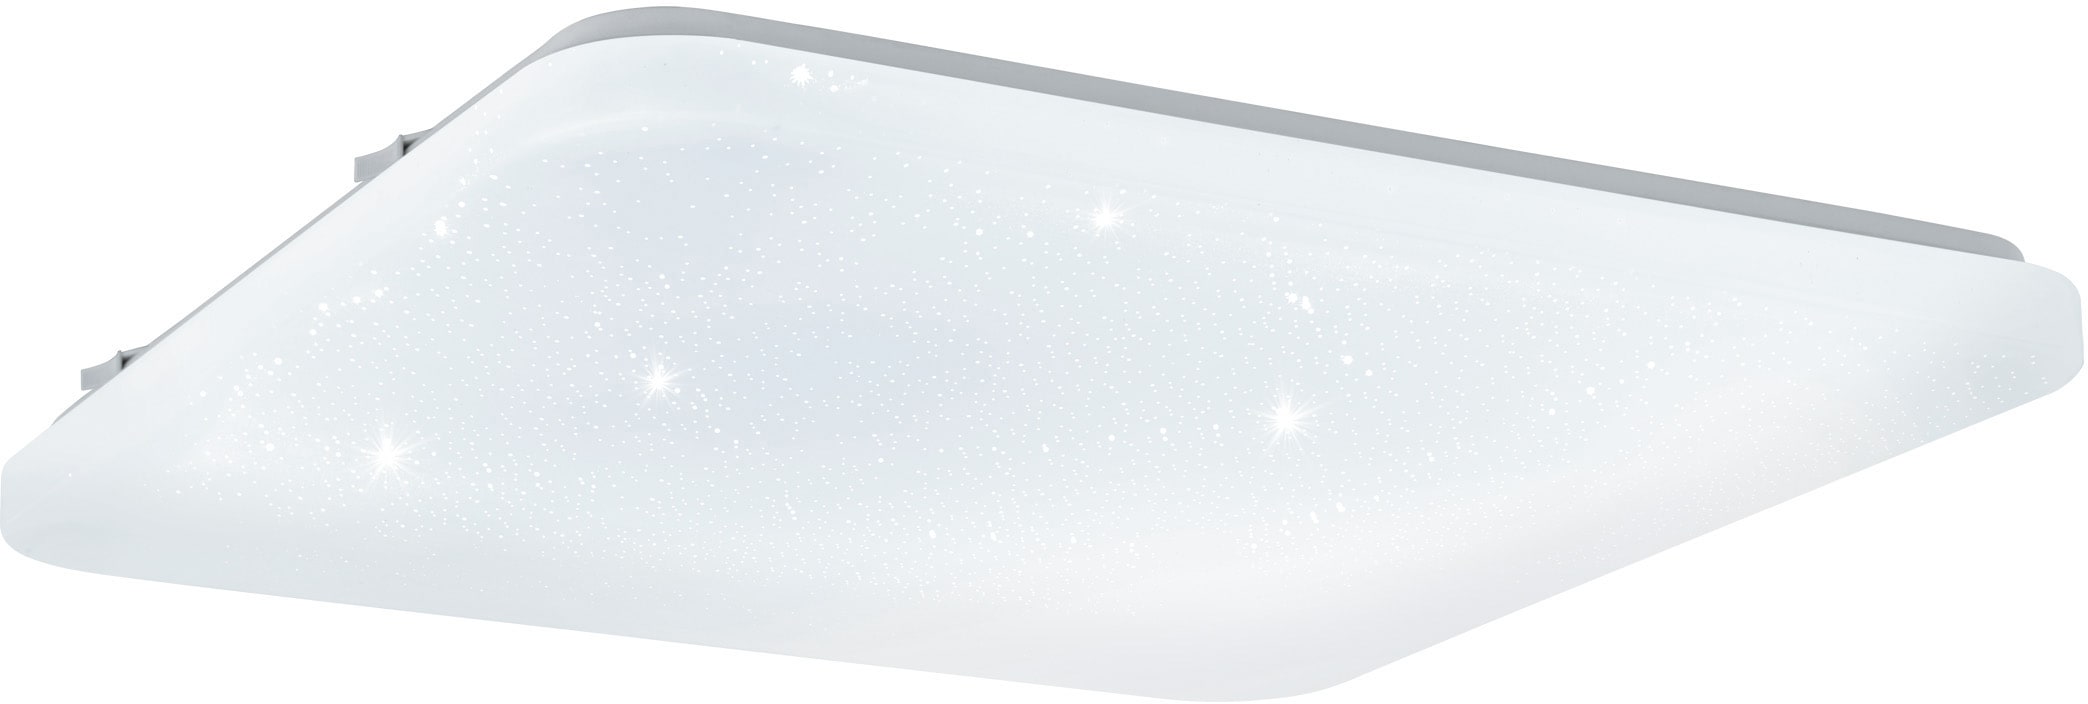 EGLO LED Deckenleuchte »FRANIA-S«, LED-Board, Warmweiß, weiß / L43 x H7 x B33 cm / inkl. 1 x LED-Platine (je 33W, 3600lm, 3000K) / Deckenlampe - Sternenhimmel - Lampe - Schlafzimmerlampe - Kinderzimmerlampe - Kinderzimmer - Schlafzimmer